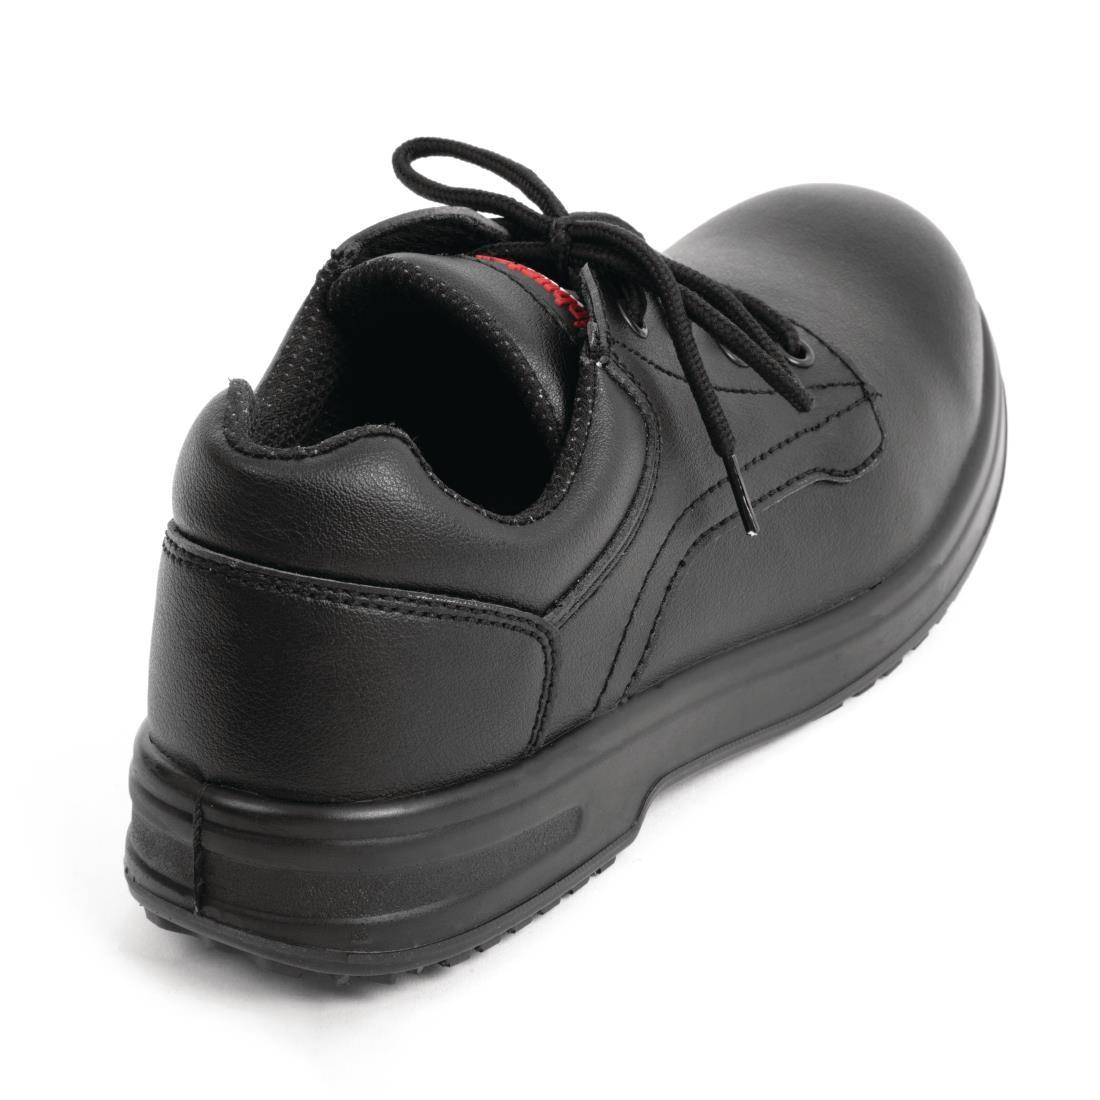 Slipbuster Basic Toe Cap Safety Shoes Black 41 - BB497-41  - 3